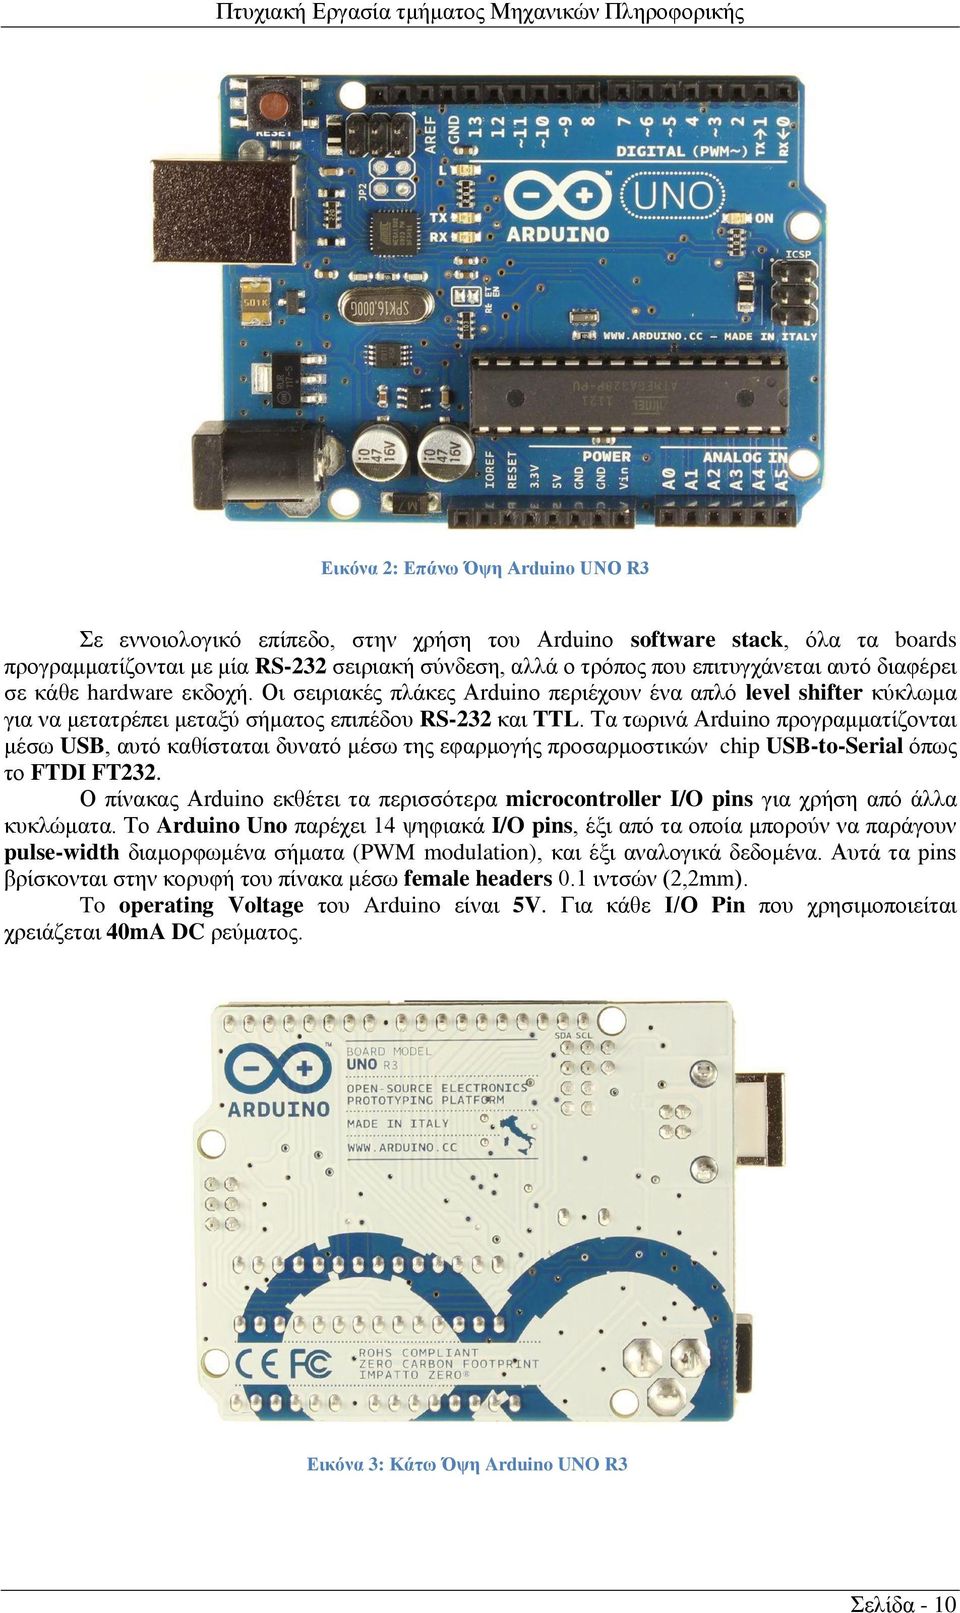 Τα τωρινά Arduino προγραμματίζονται μέσω USB, αυτό καθίσταται δυνατό μέσω της εφαρμογής προσαρμοστικών chip USB-to-Serial όπως το FTDI FT232.